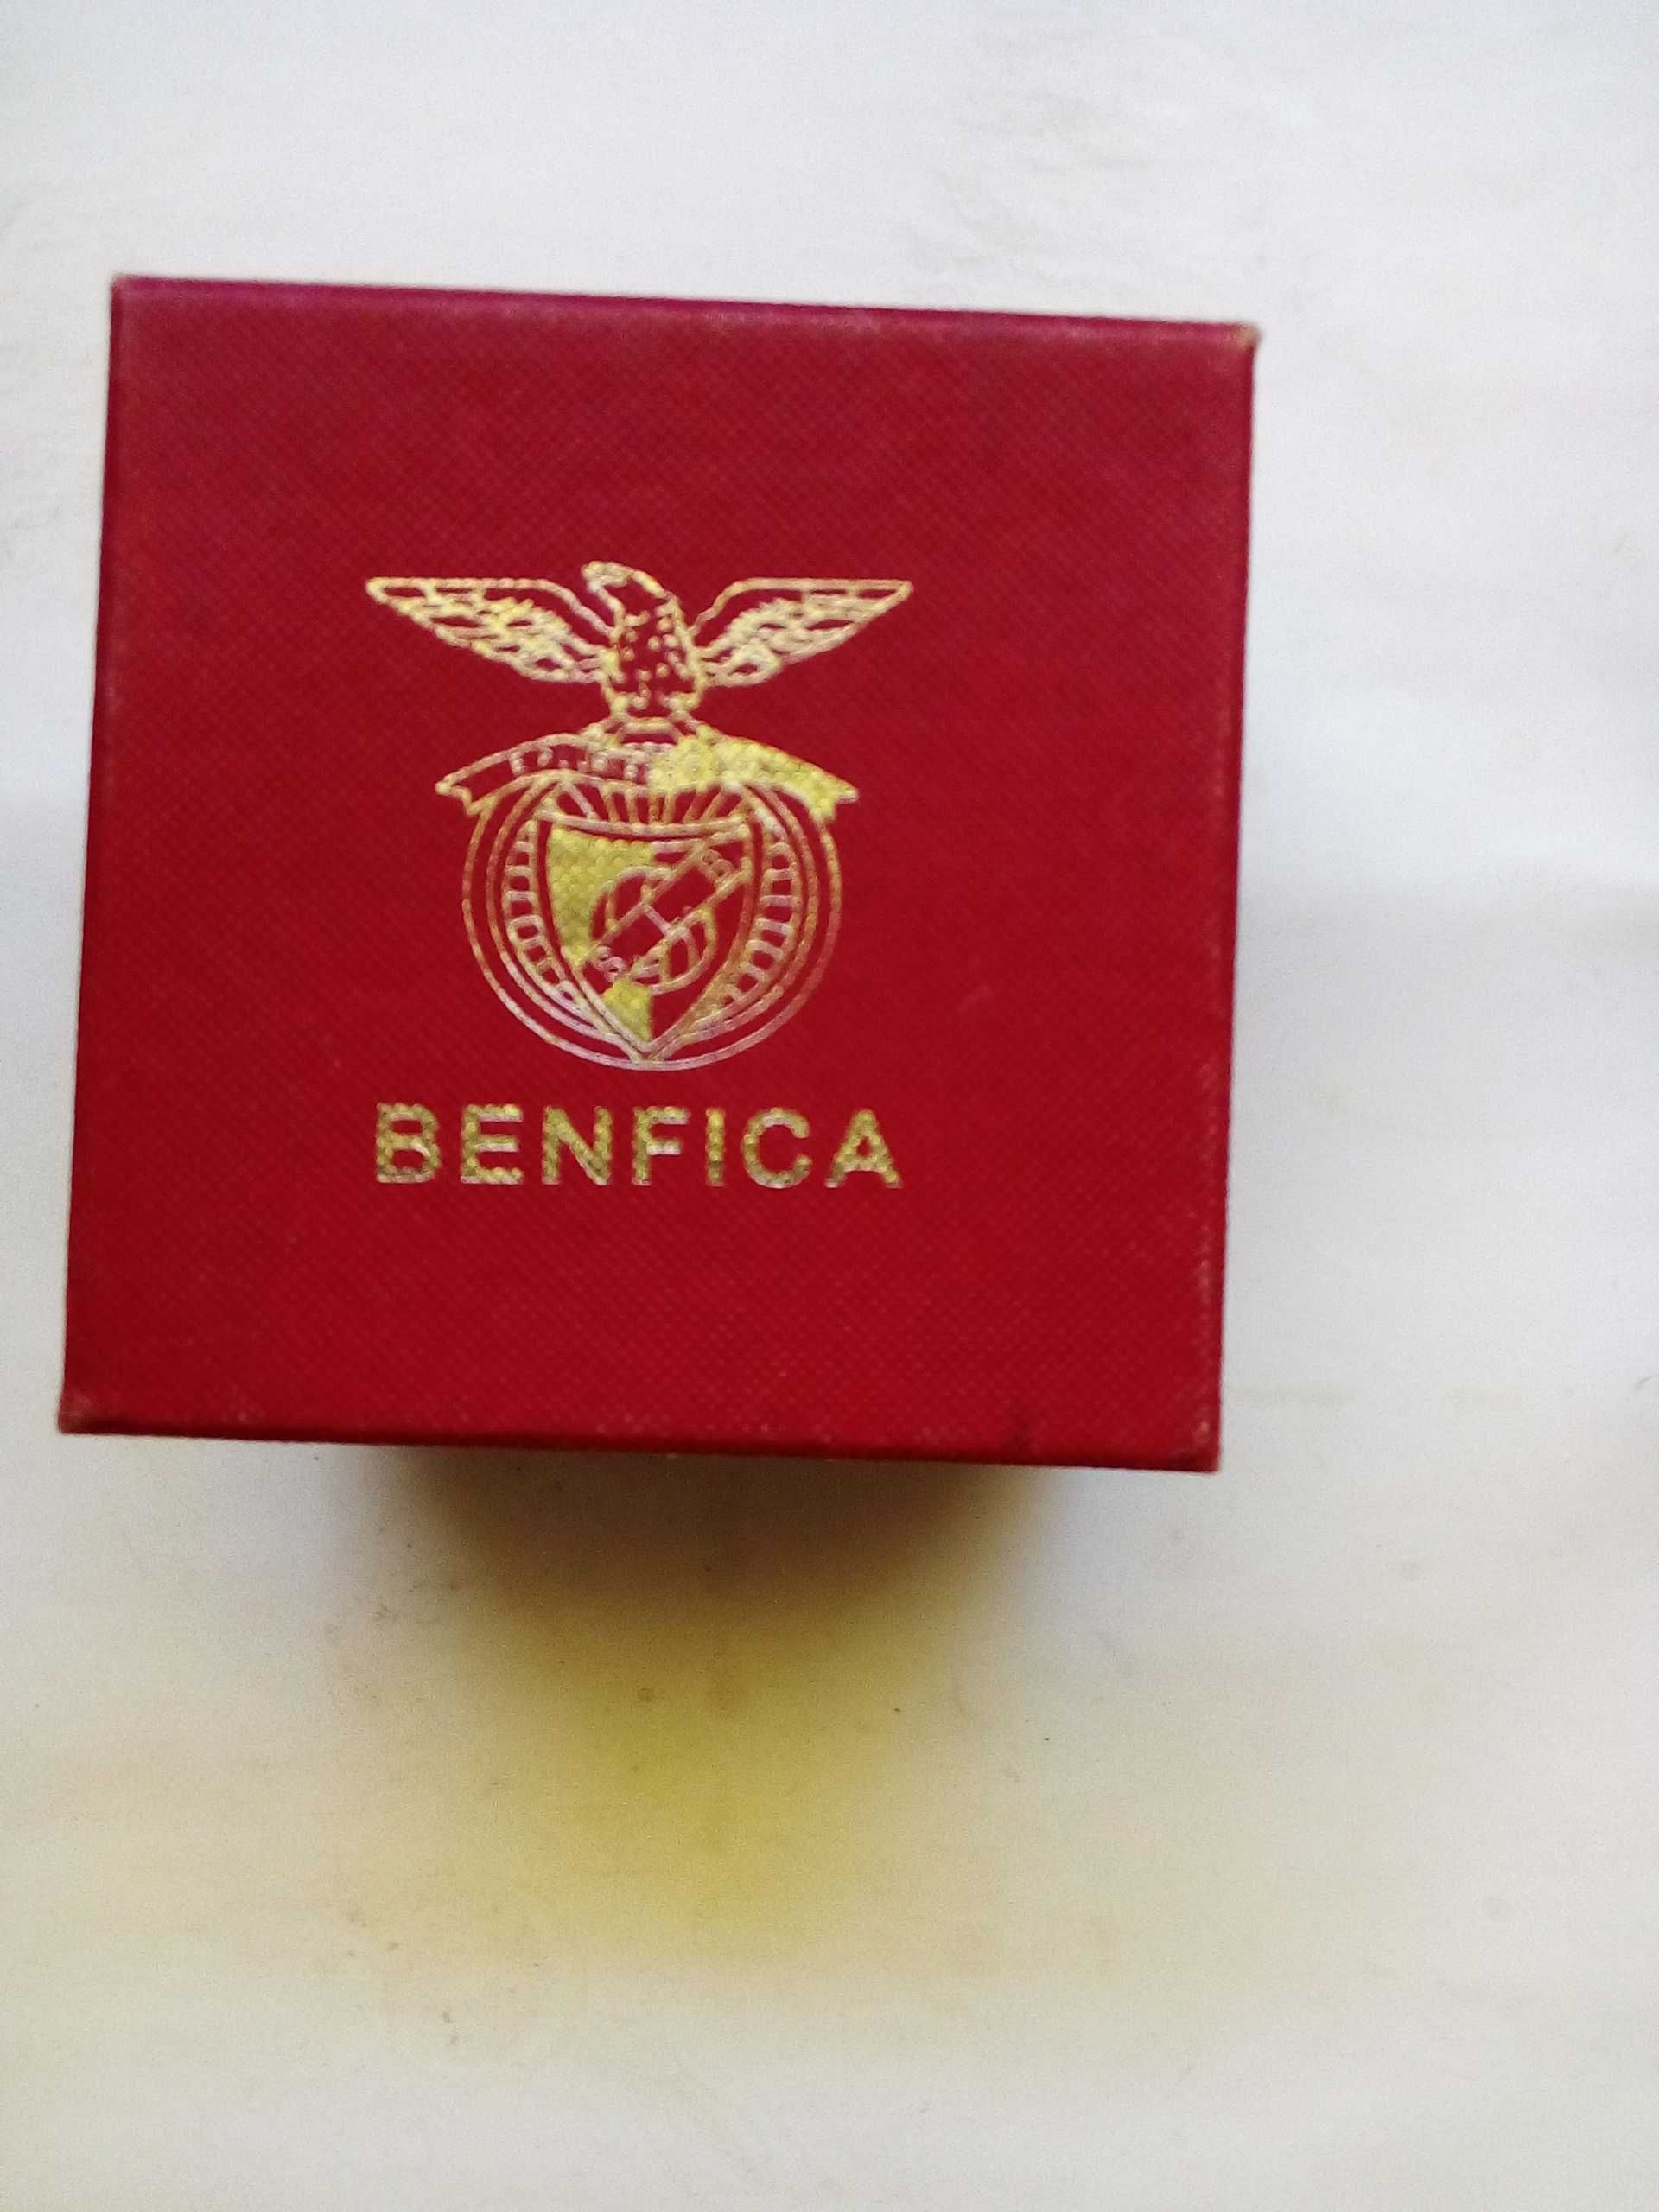 Benfica, pirâmide em vidro com emblema